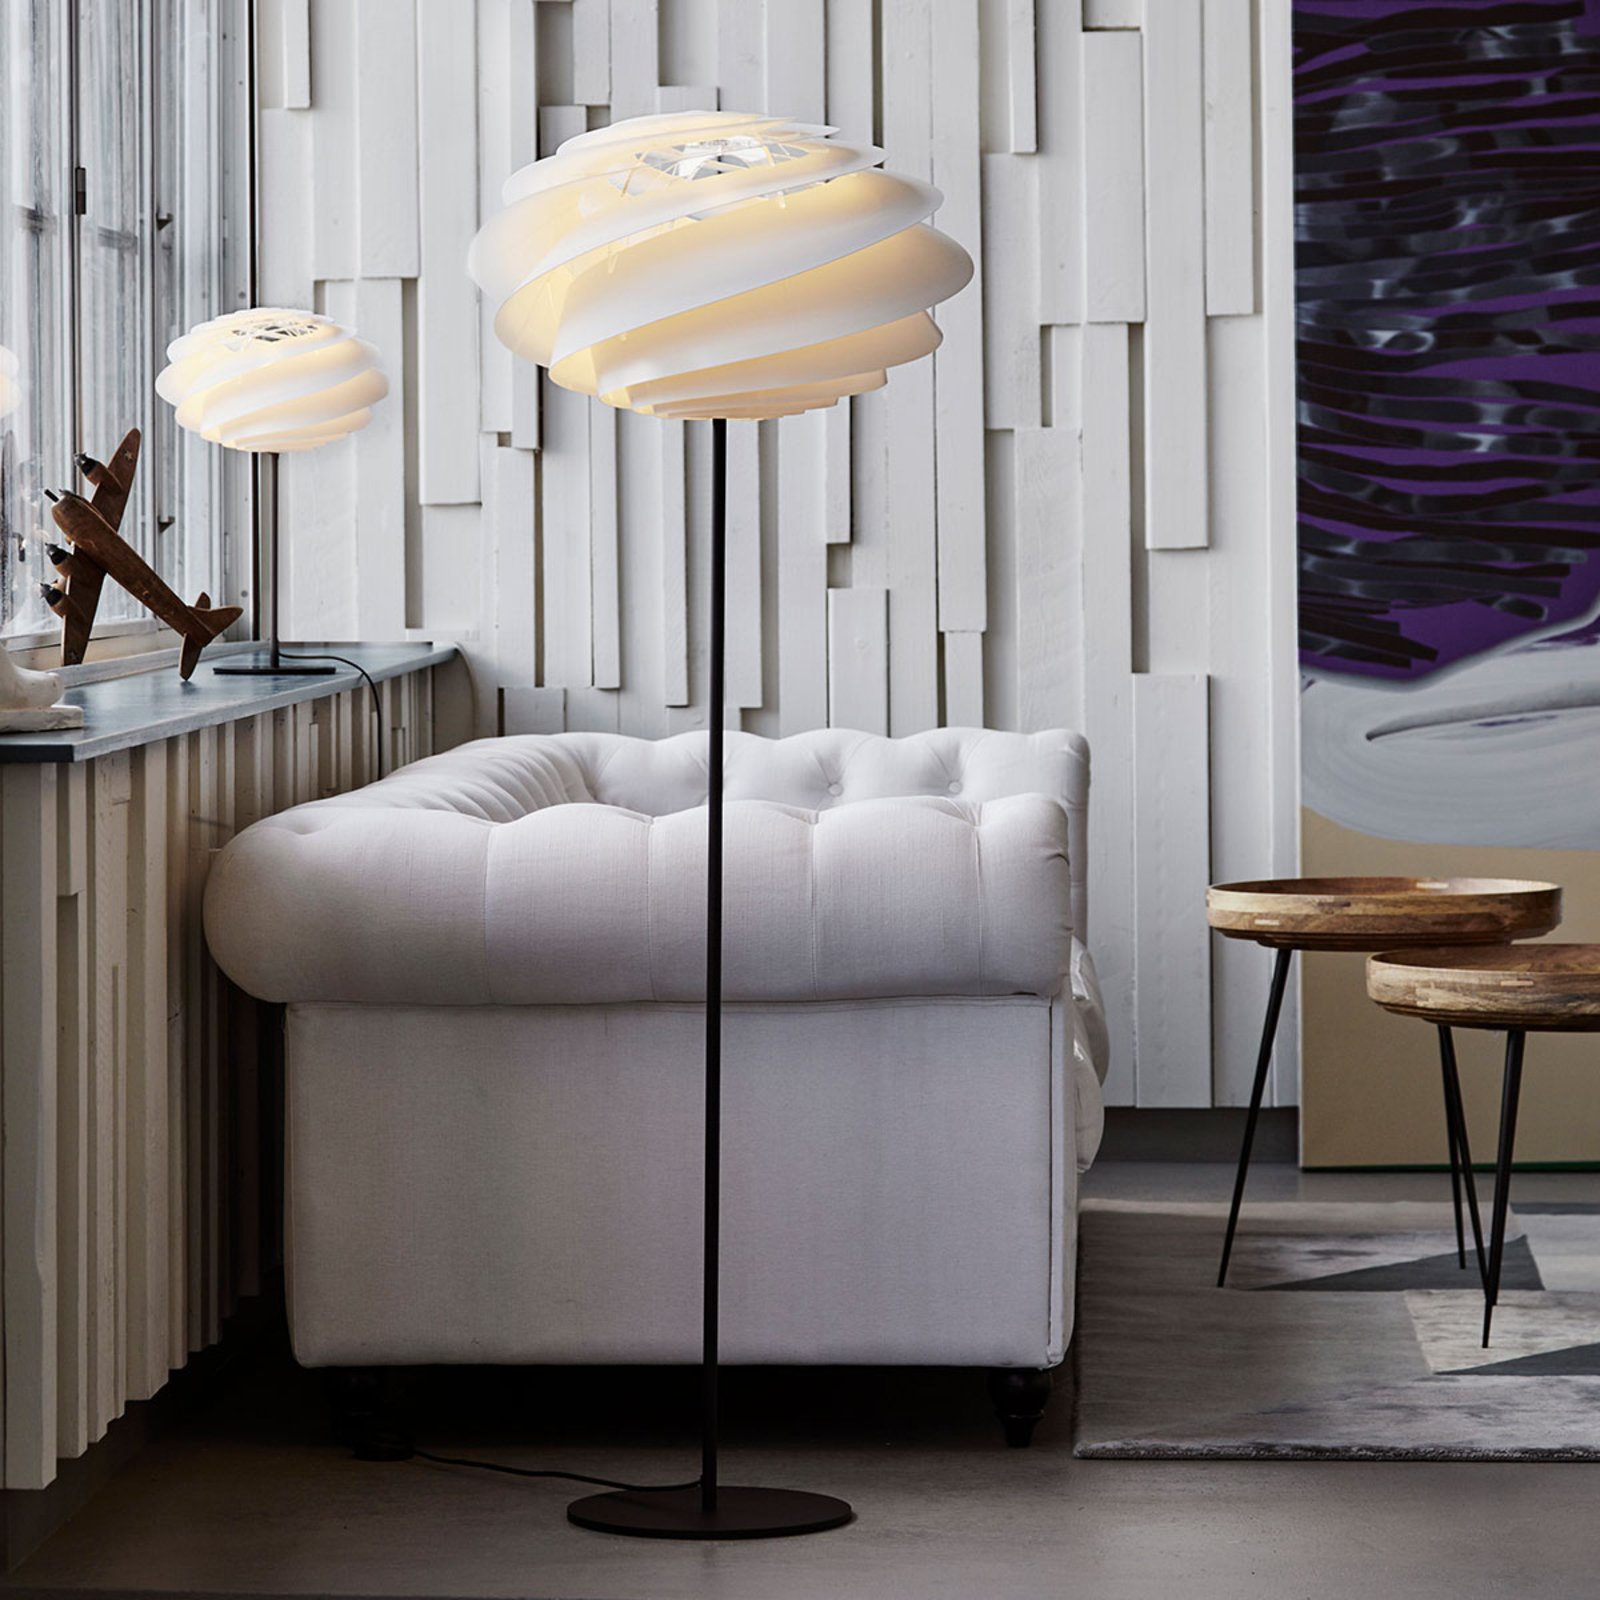 LE KLINT Swirl - witte design vloerlamp